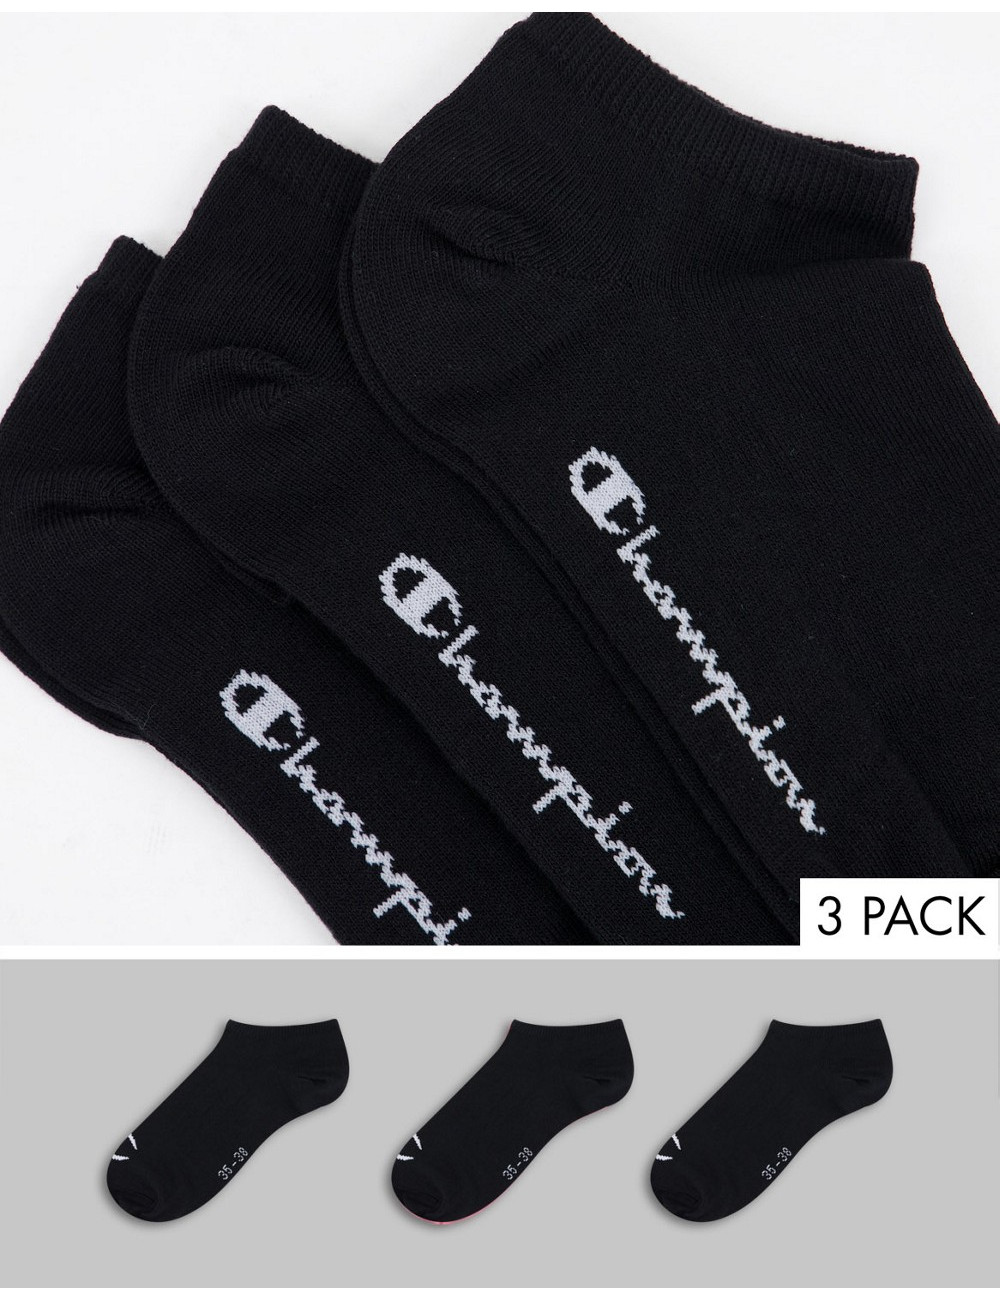 Champion 3 pack socks in black